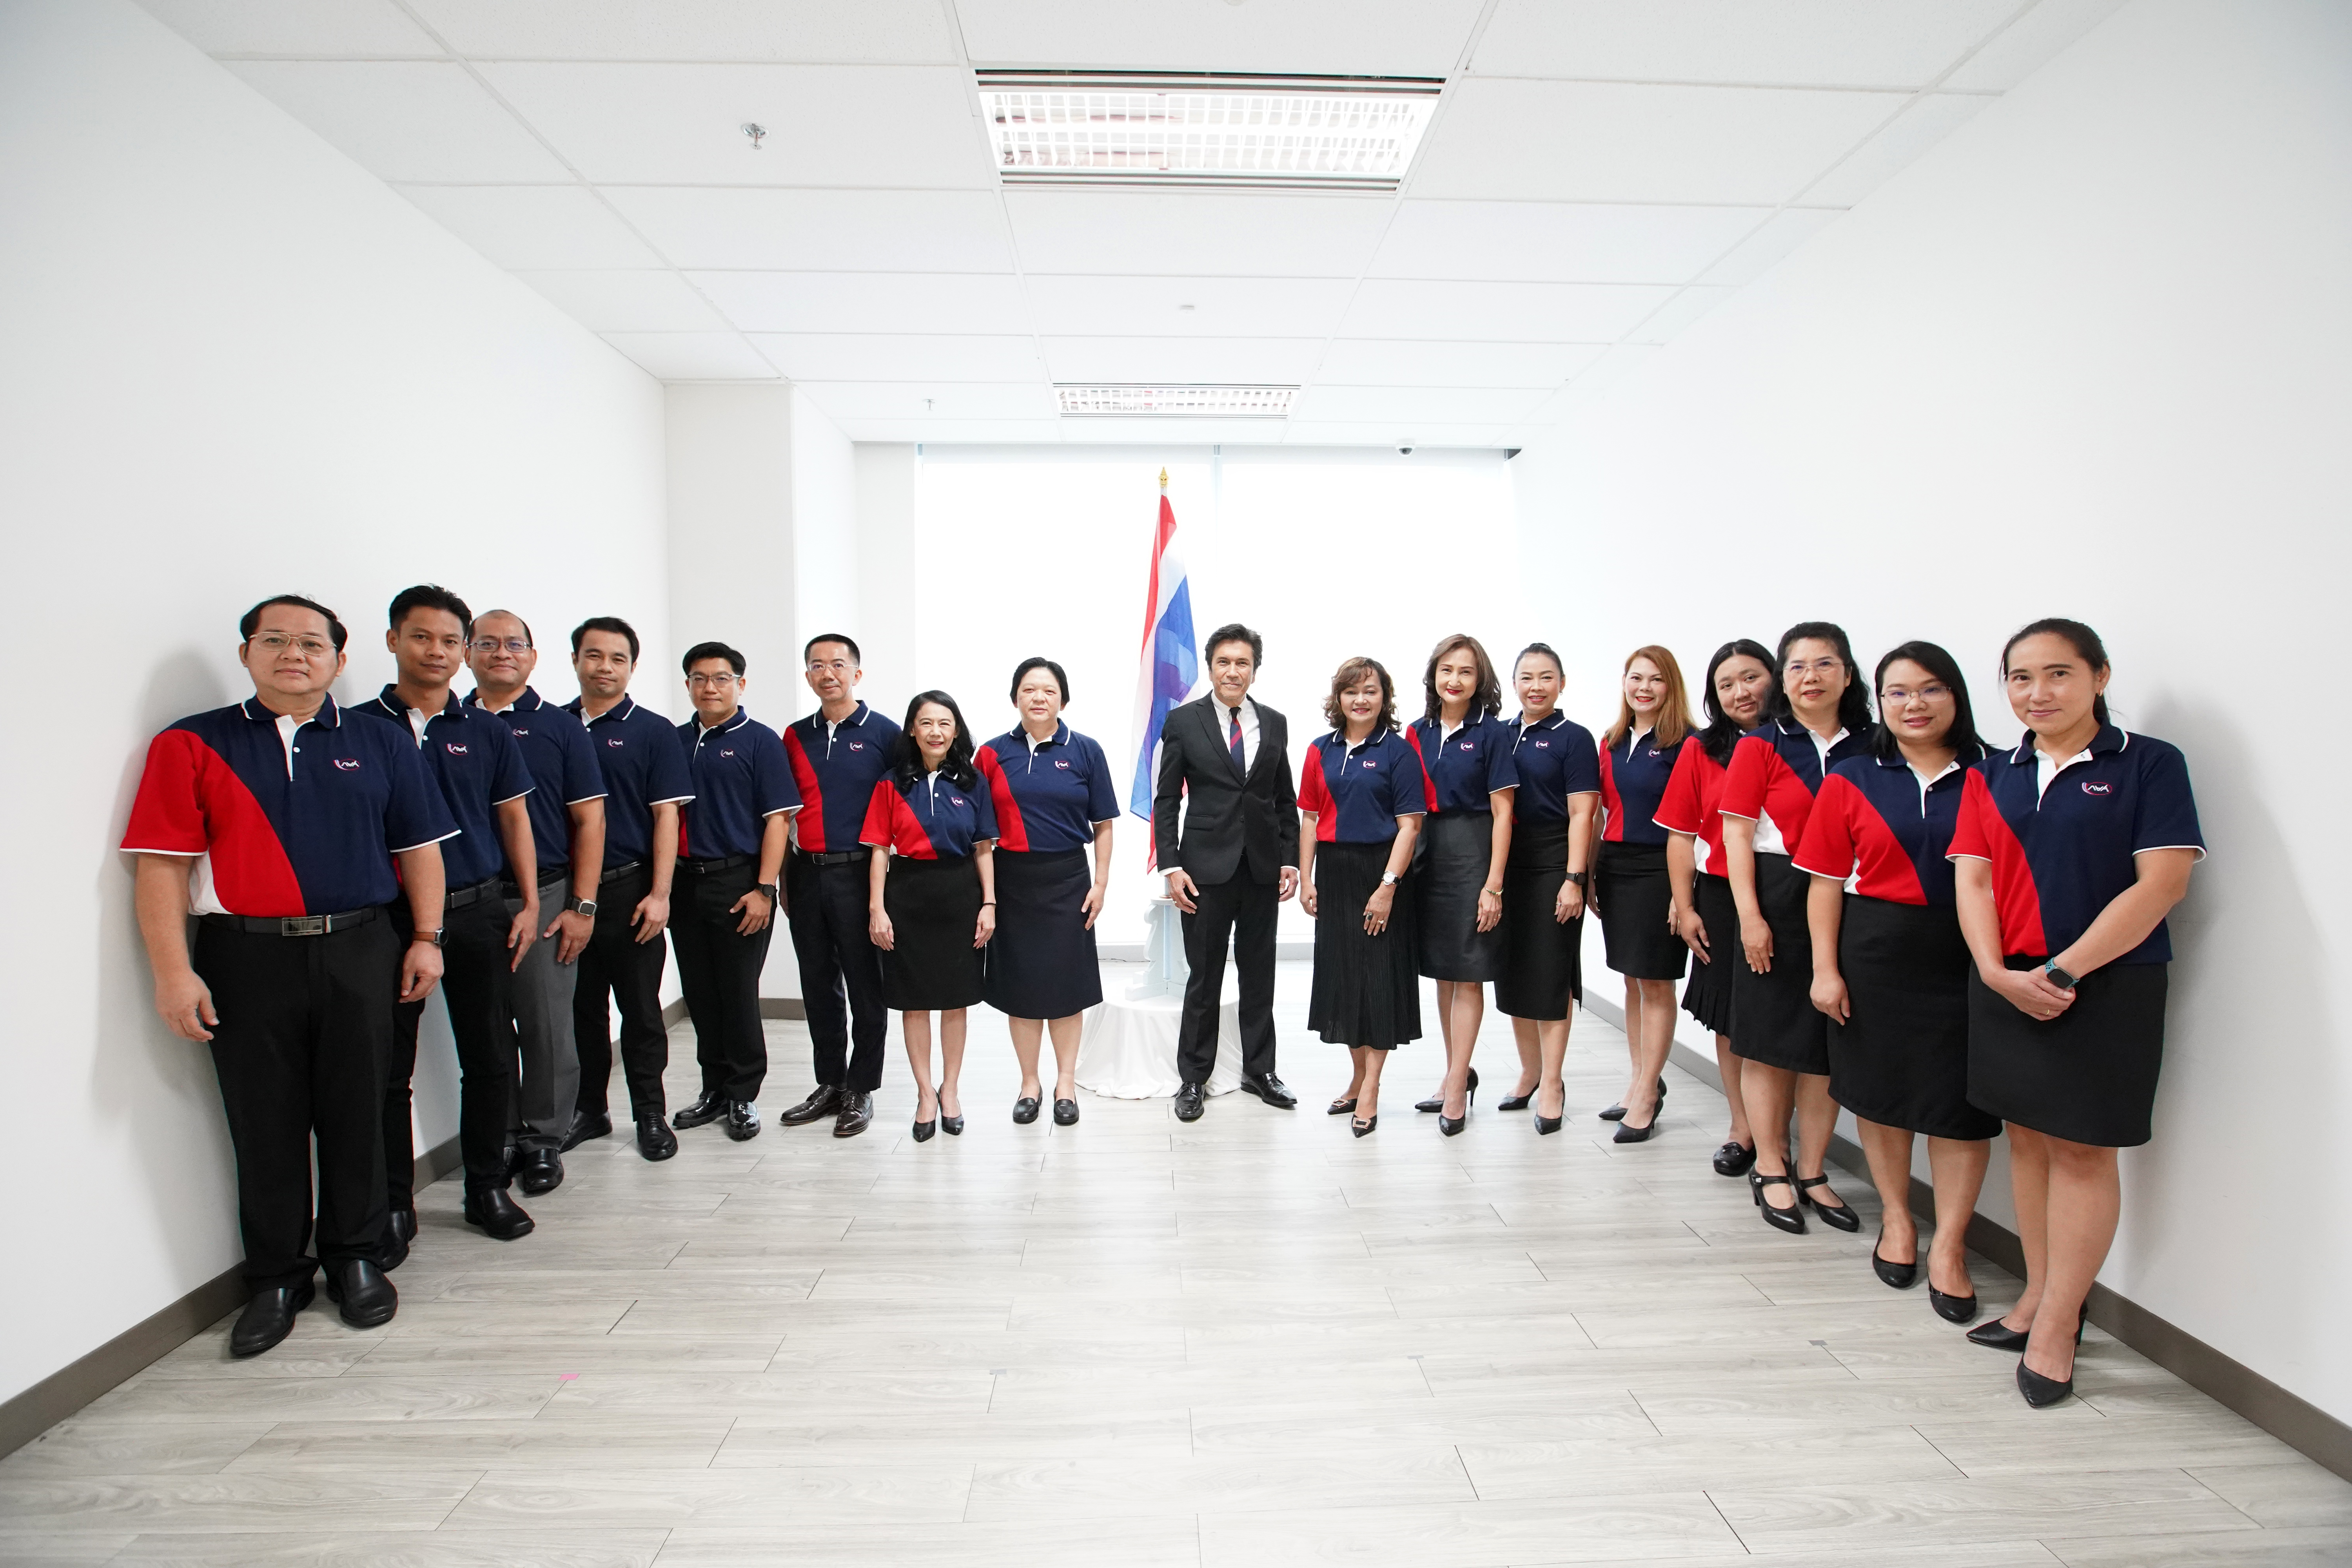 กยศ. จัดกิจกรรมเนื่องในวันพระราชทานธงชาติไทย 28 กันยายน (Thai National Flag Day) ประจำปี 2566